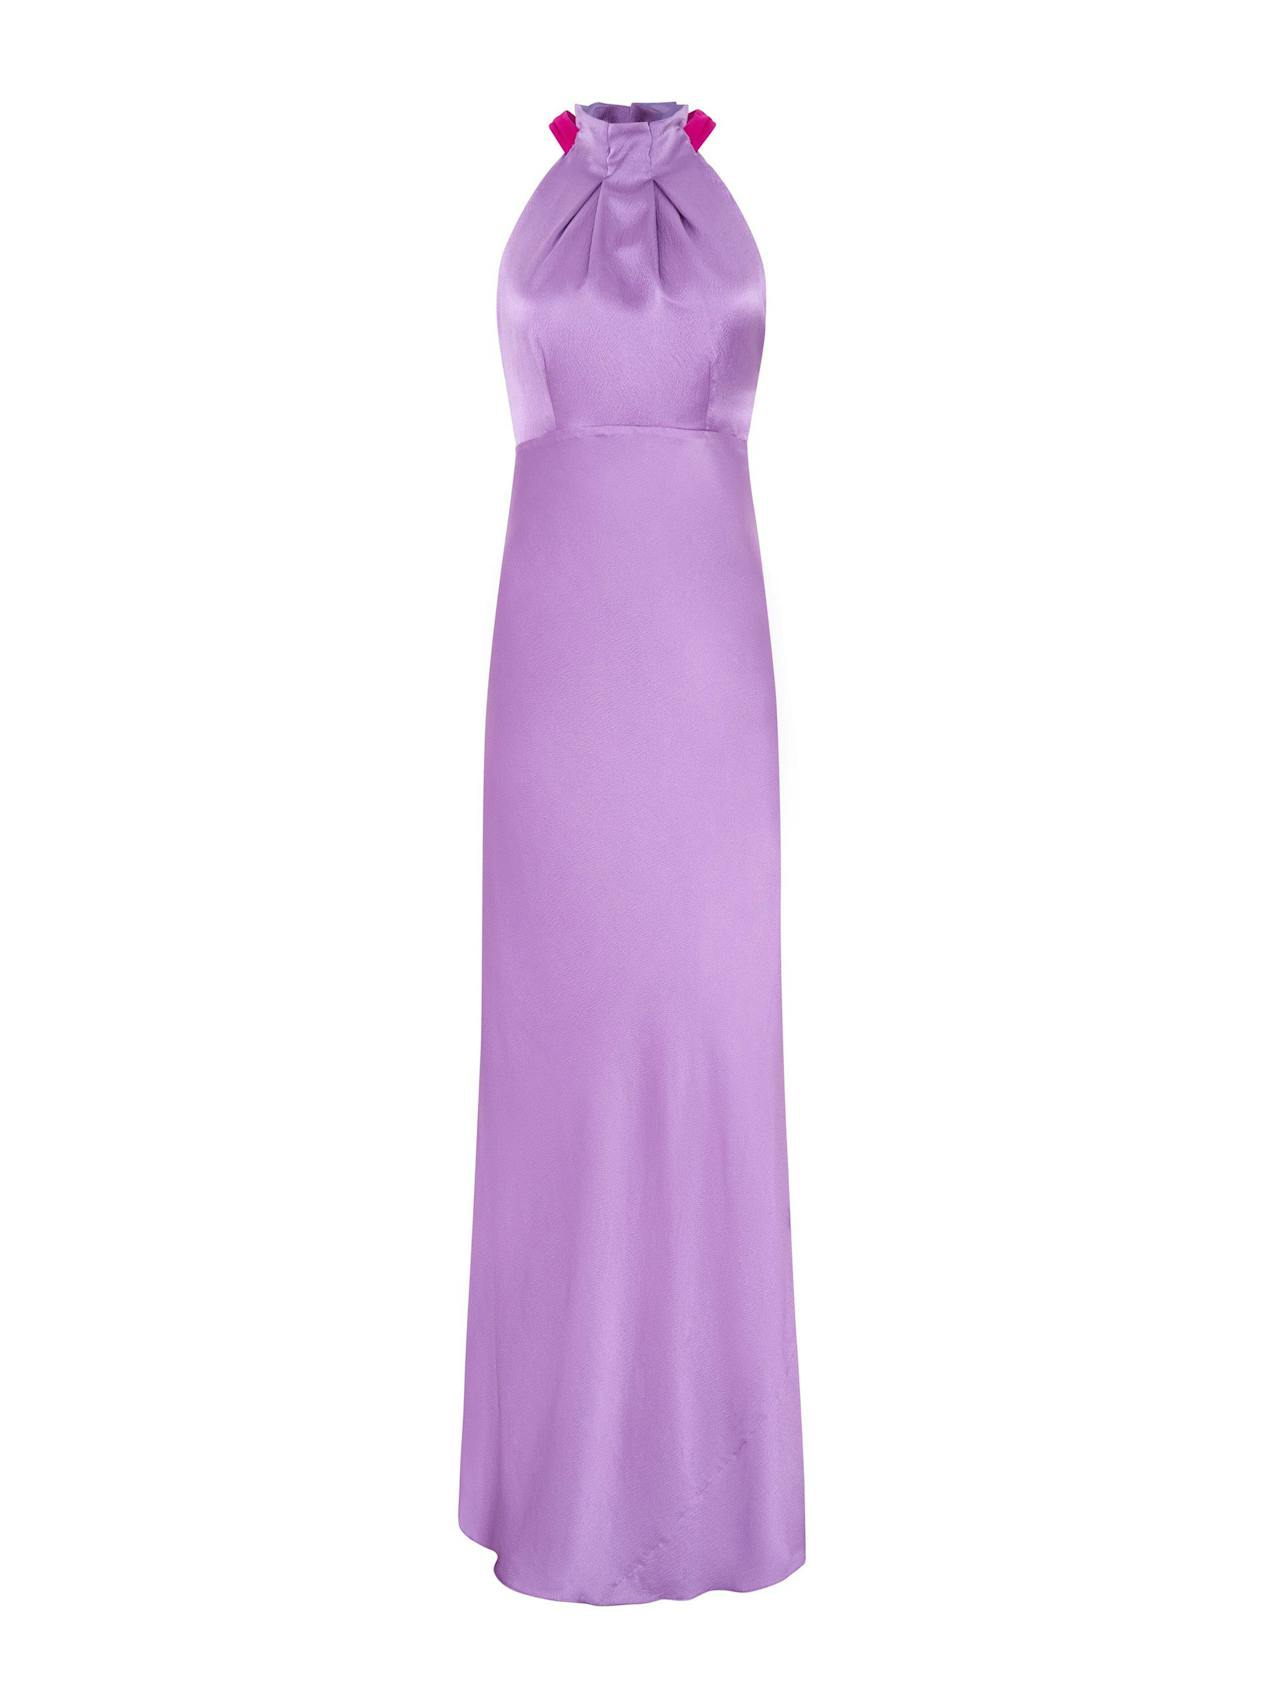 Lilac bougainvillea Michelle dress